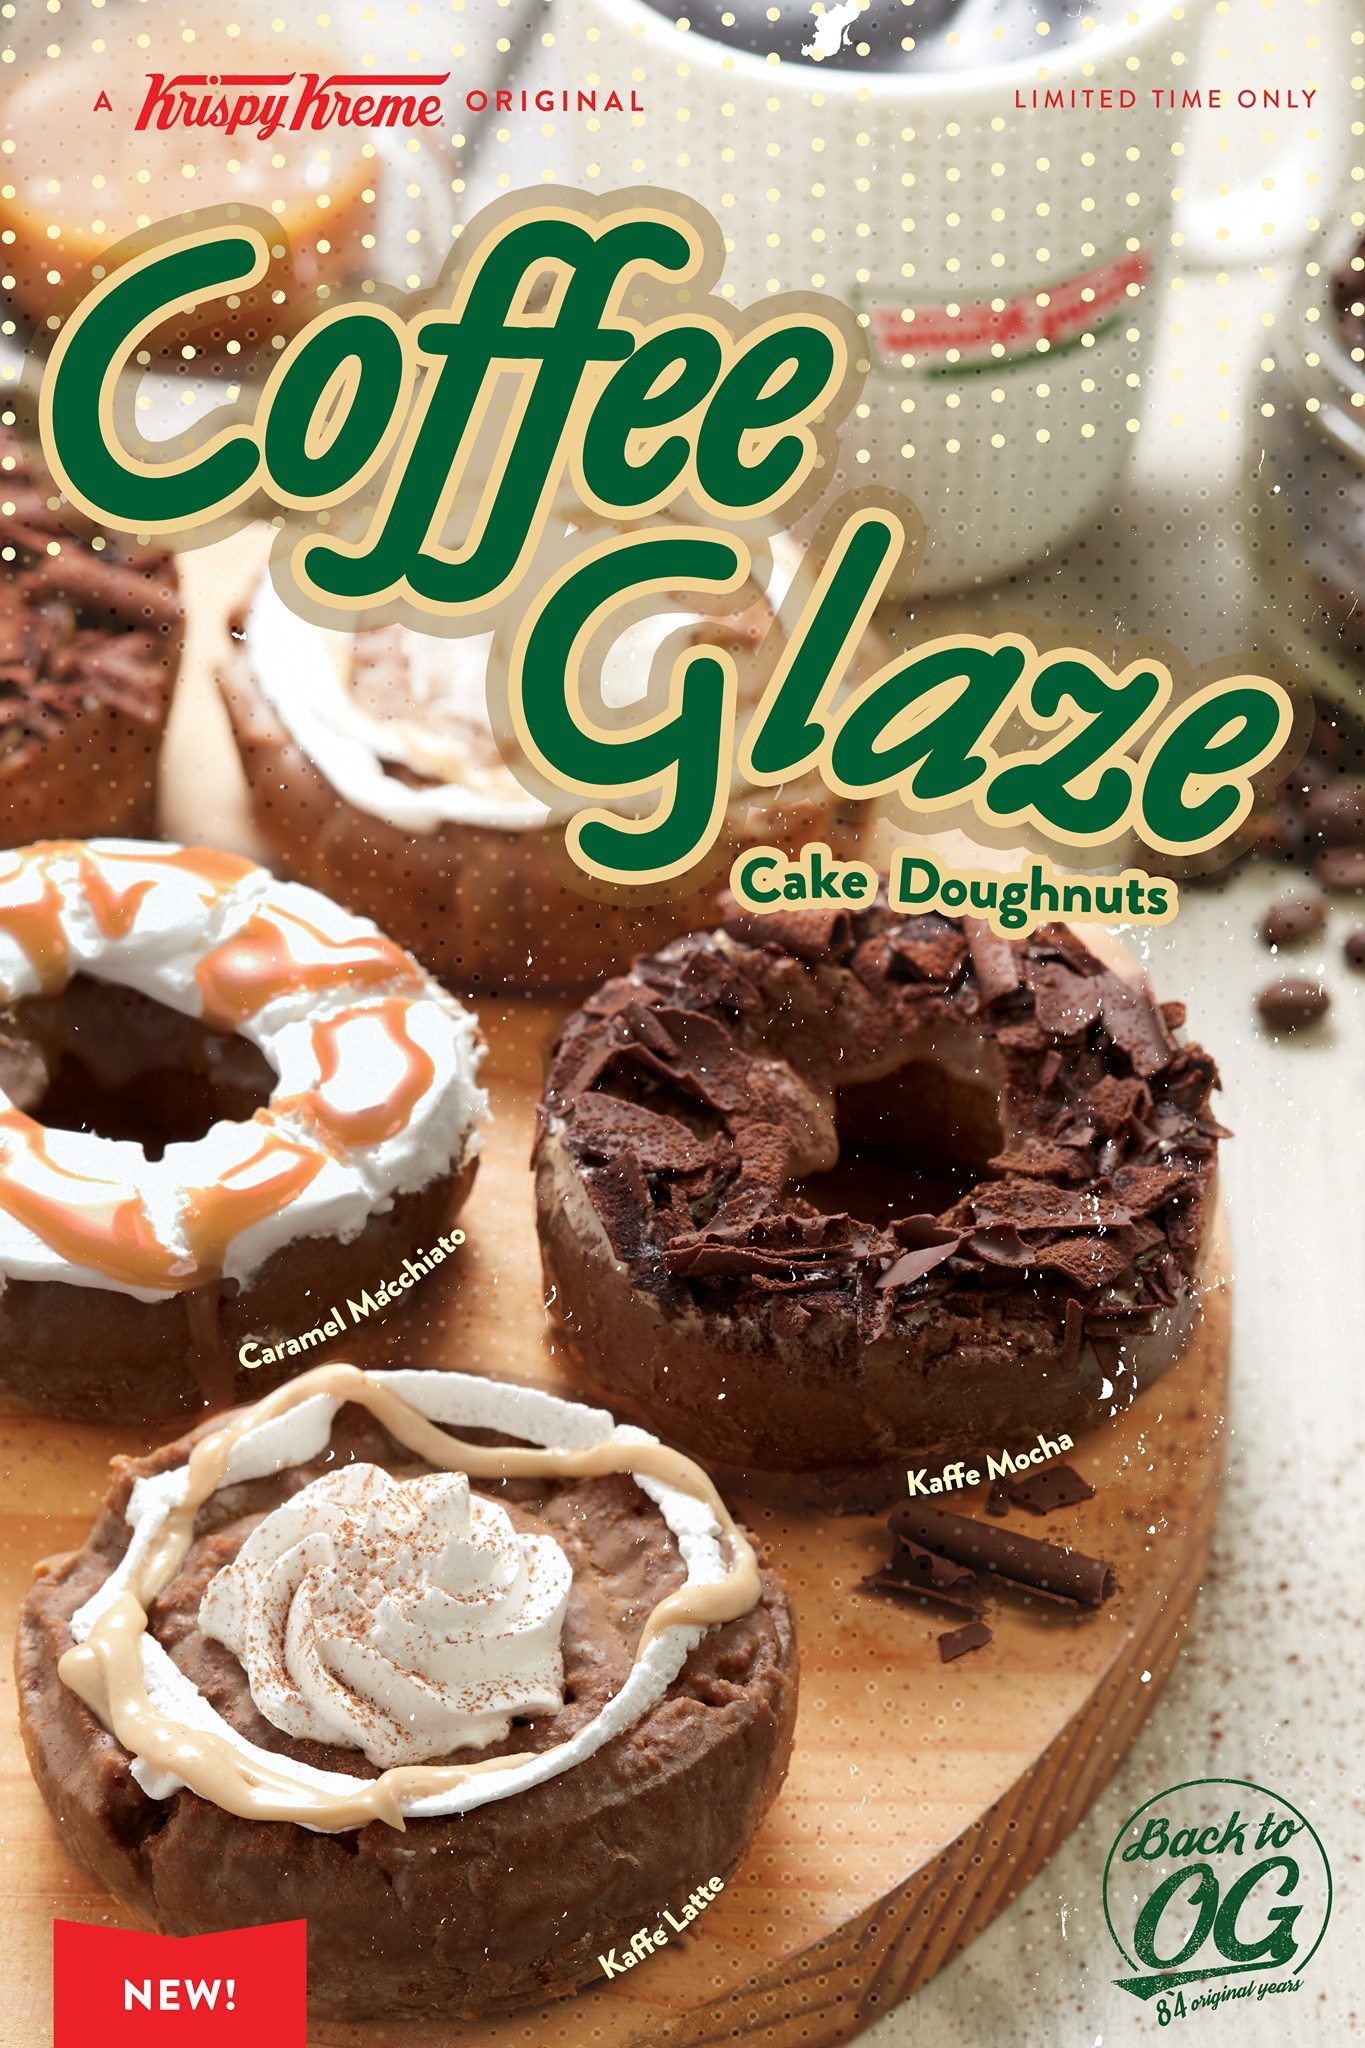 Krispy Kreme introduces Coffee Glaze cake donuts